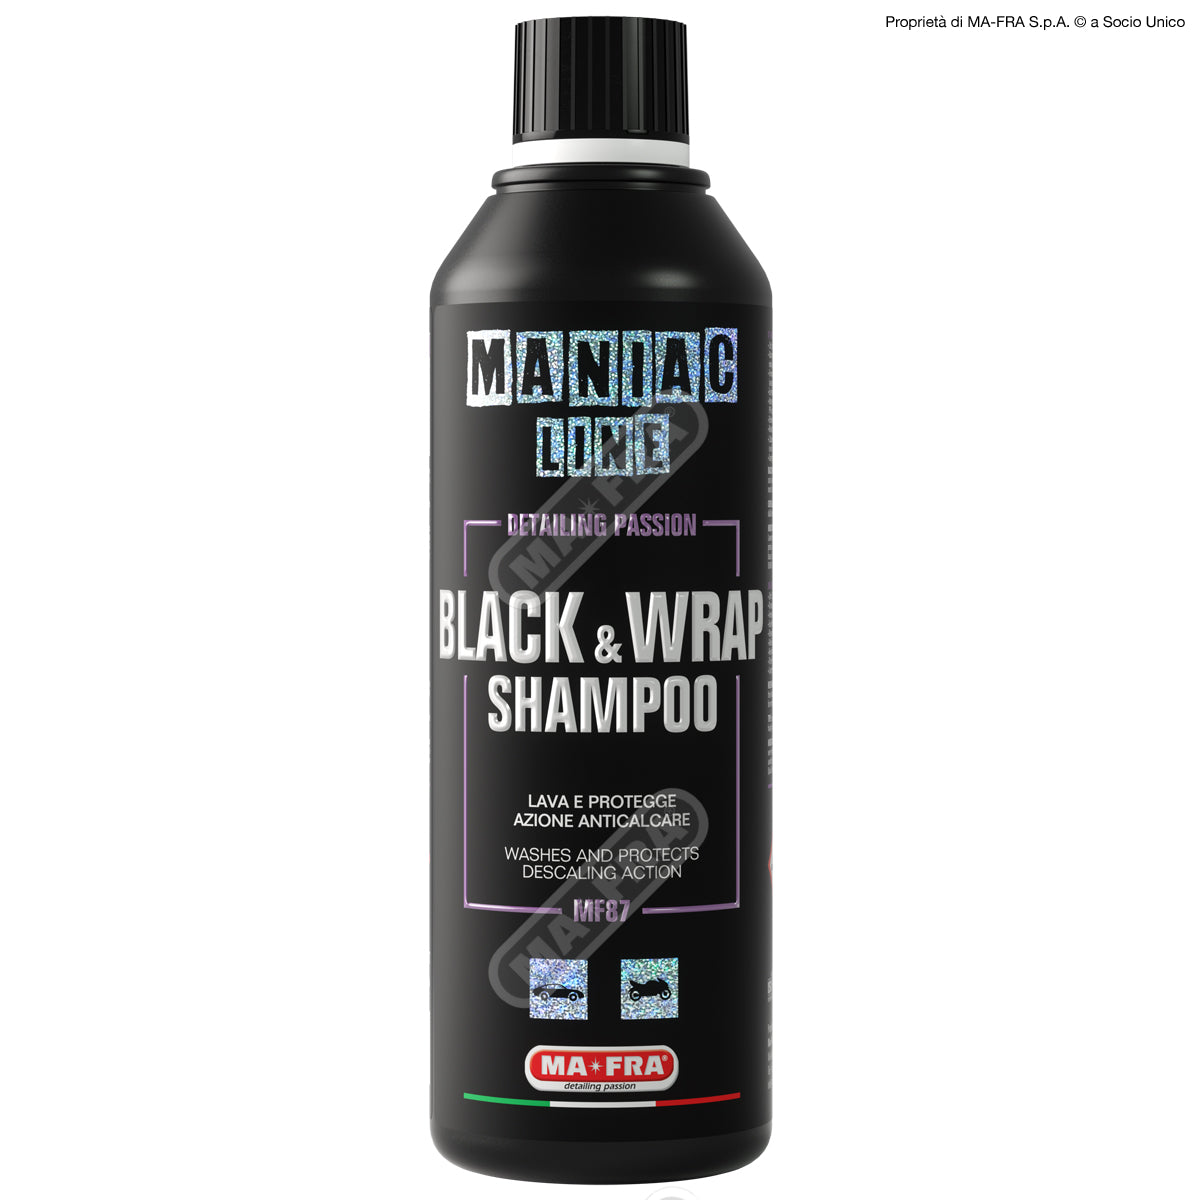 Maniac Line - BLACK & WRAP SHAMPOO 500ml